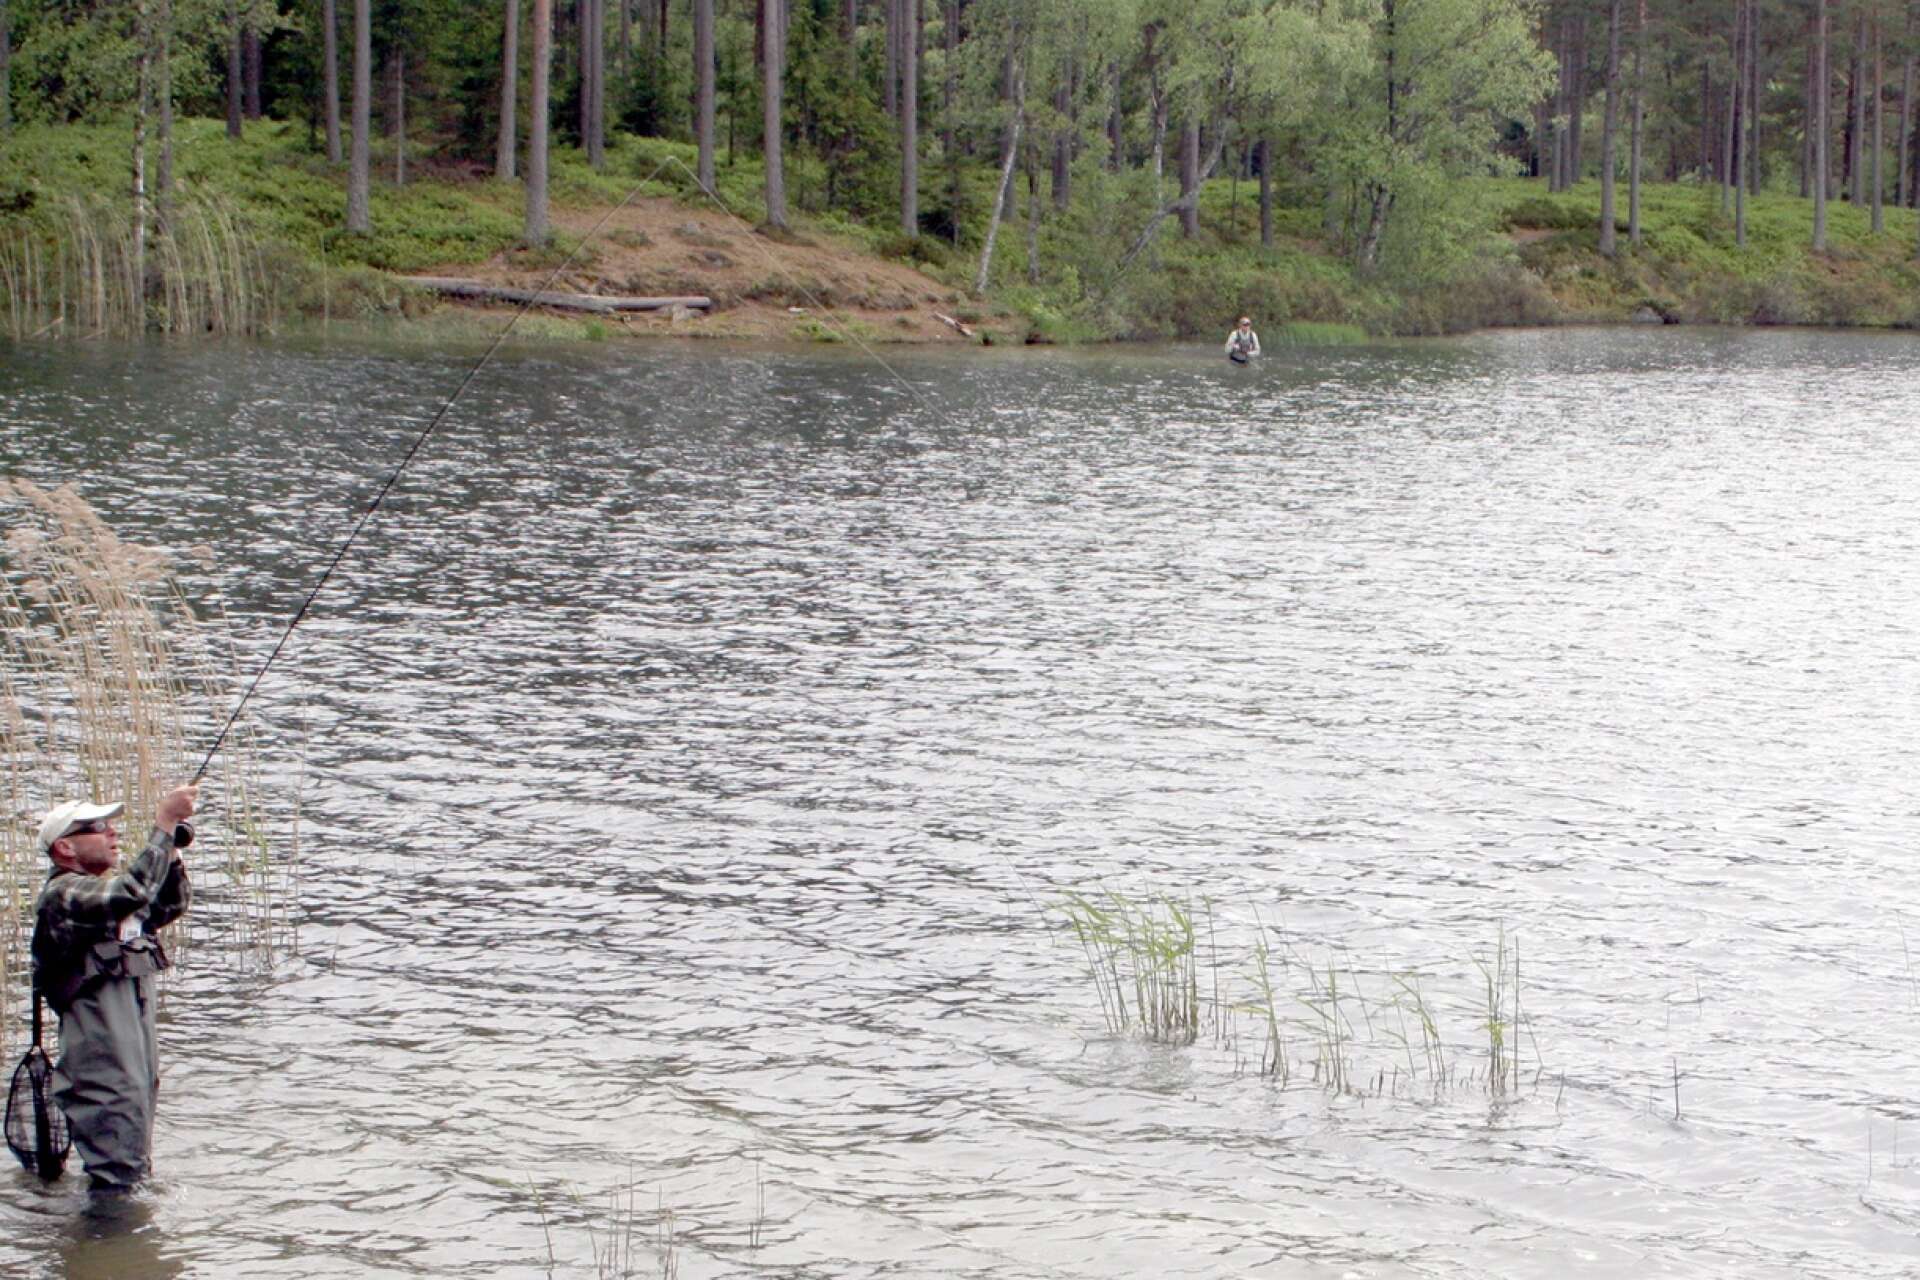 Naturturismen inom Hökensåsområdet inventerades, kartlades och analyserades i ett av projekten som fått Leader-pengar. 